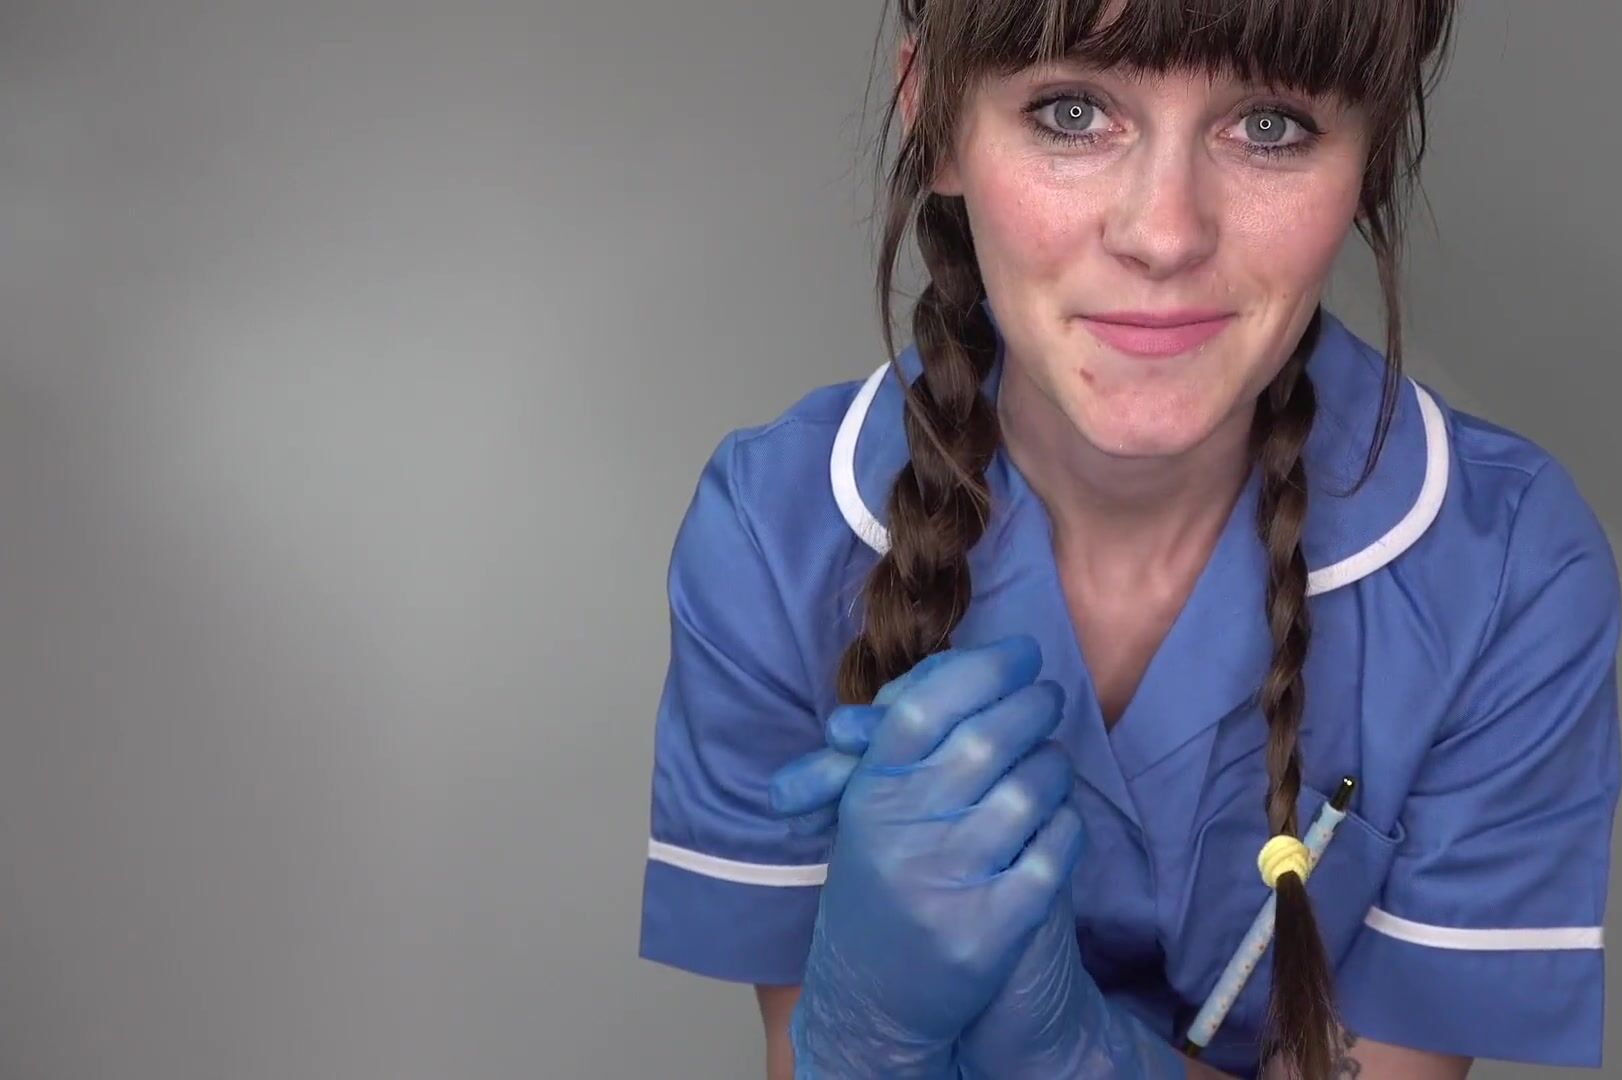 The Fertility Nurse- Sydney Harwin watch online pic